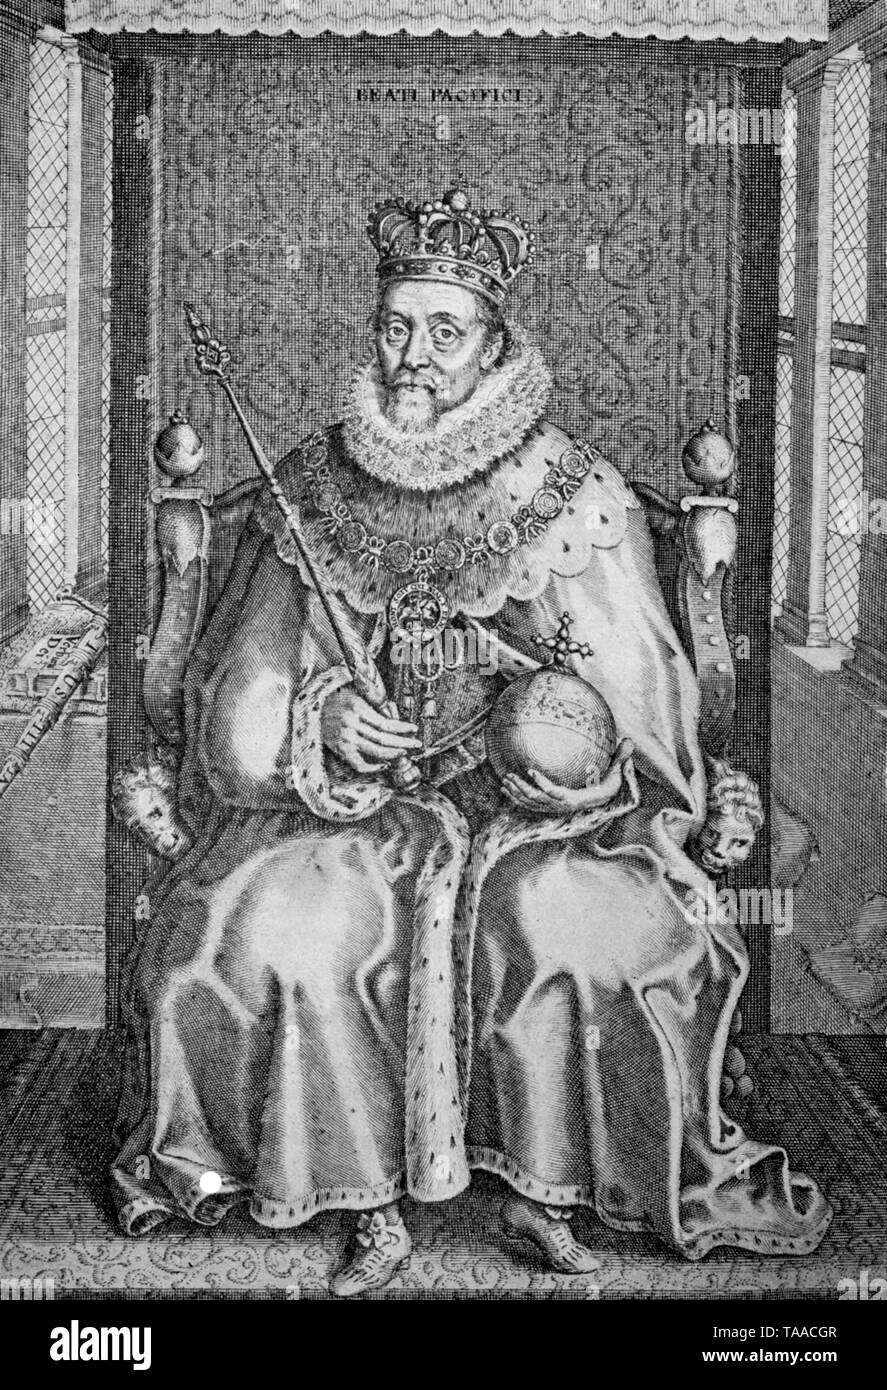 König James I wie im frontispiz seine gesammelten Werke, 1616 veröffentlicht dargestellt. James VI und I (1566-1625) war König von Schottland wie James VI, König von England und Irland als James I aus der Union der Englischen und Schottischen Kronen im Jahre 1603 bis zu seinem Tod. Stockfoto